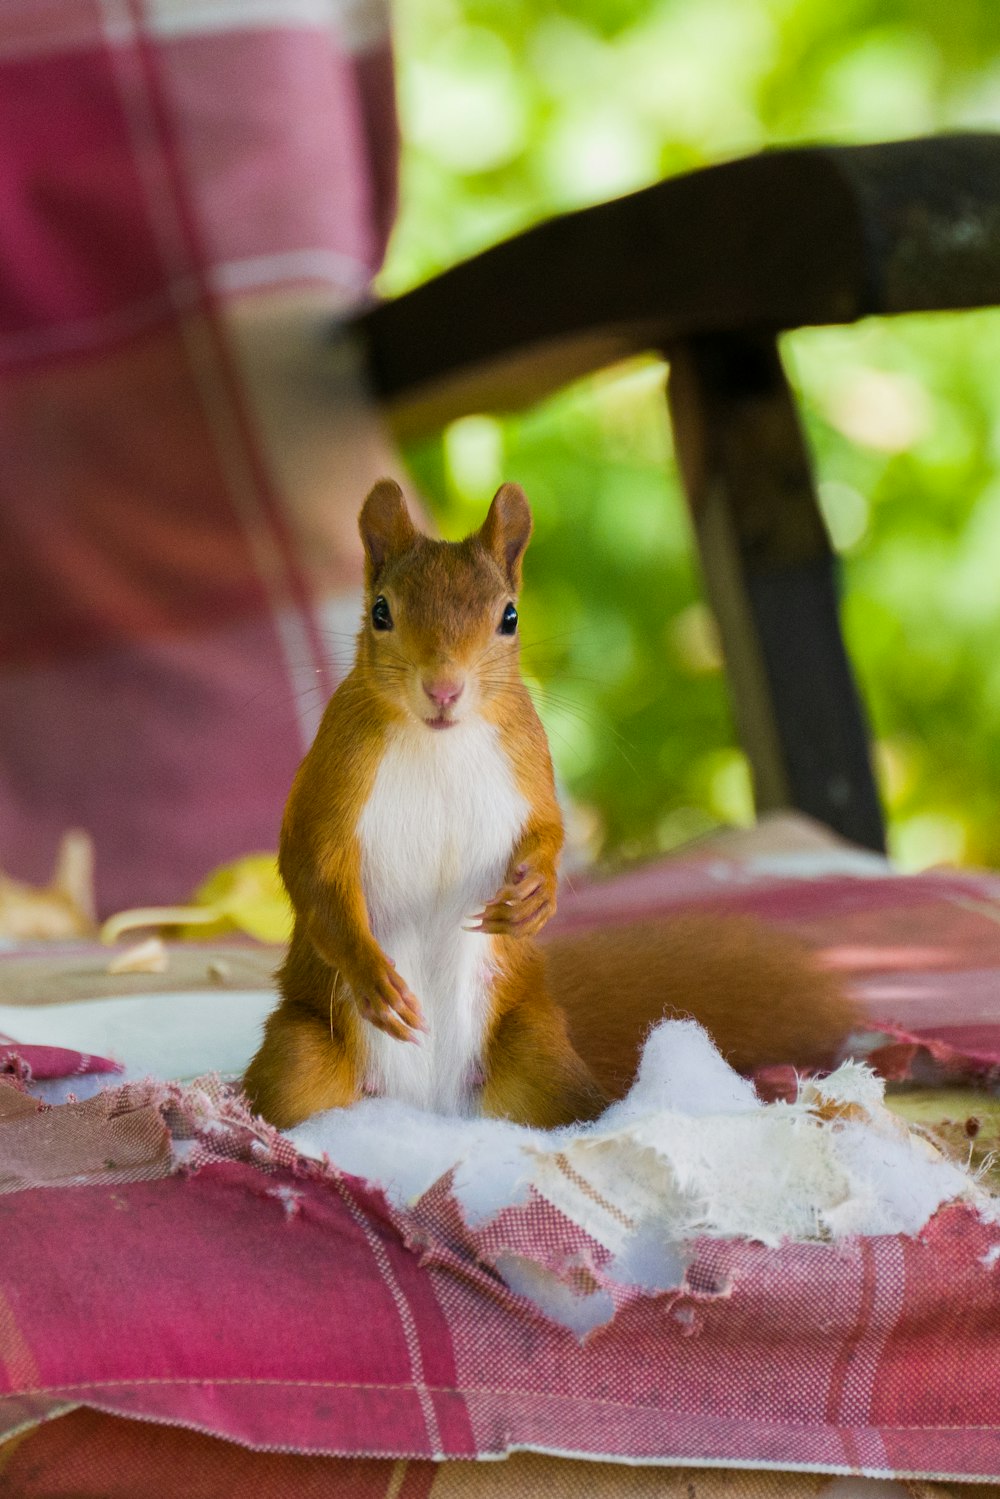 a squirrel sitting on a blanket